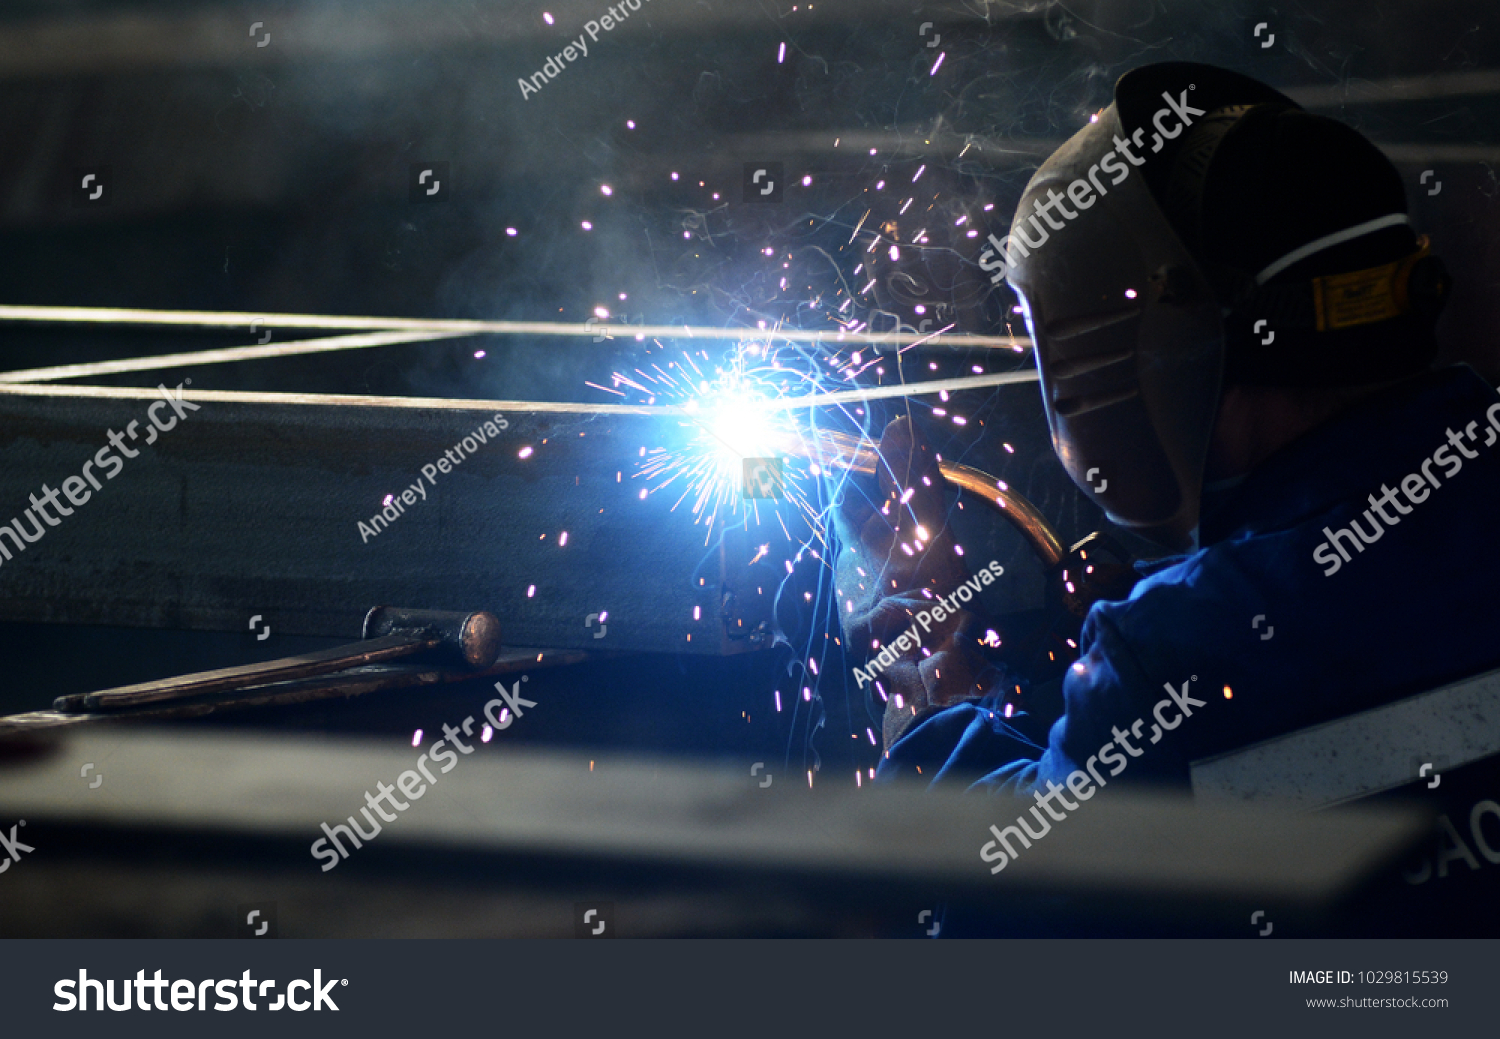 worker in welding mask welding metal construction #1029815539